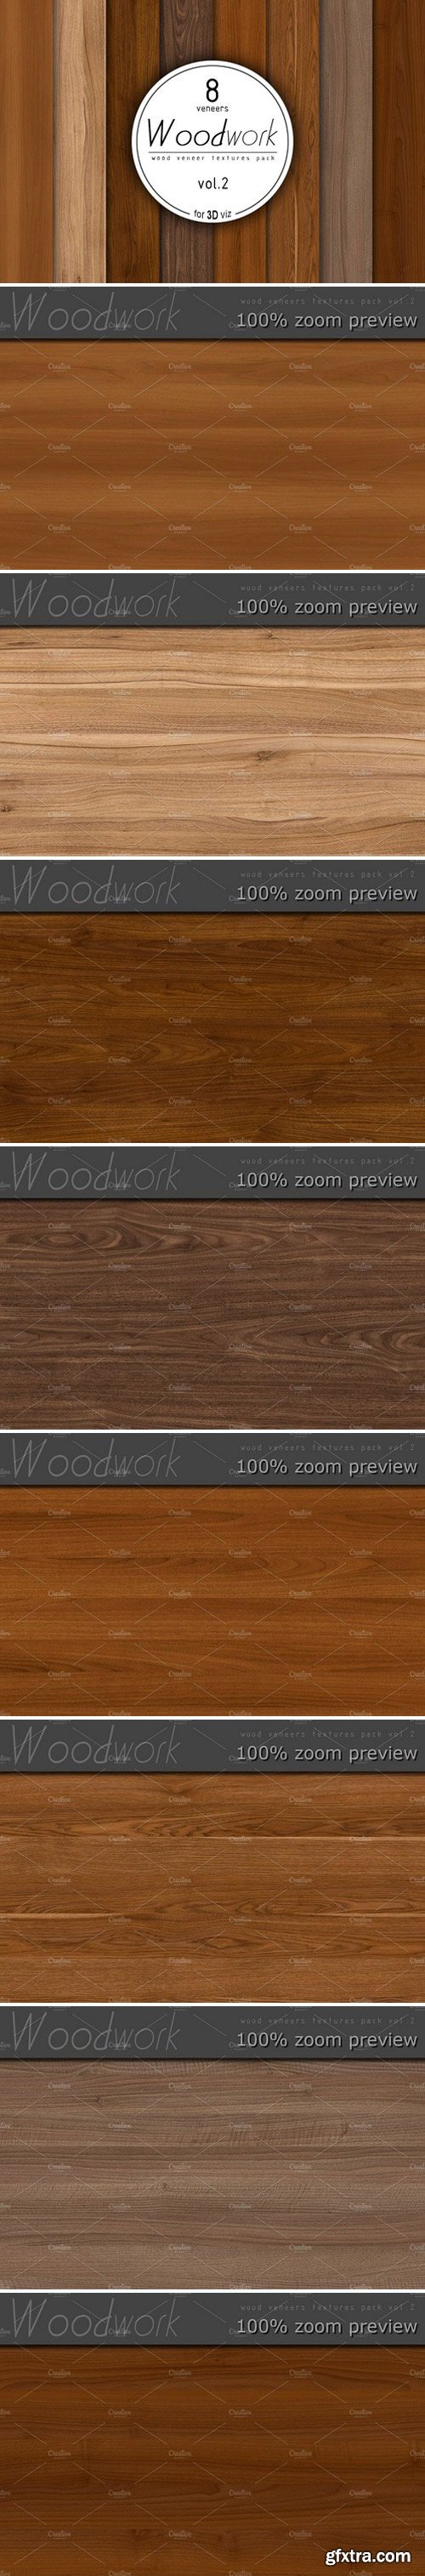 CM - 8 wood veneer texture pack vol.2 934806